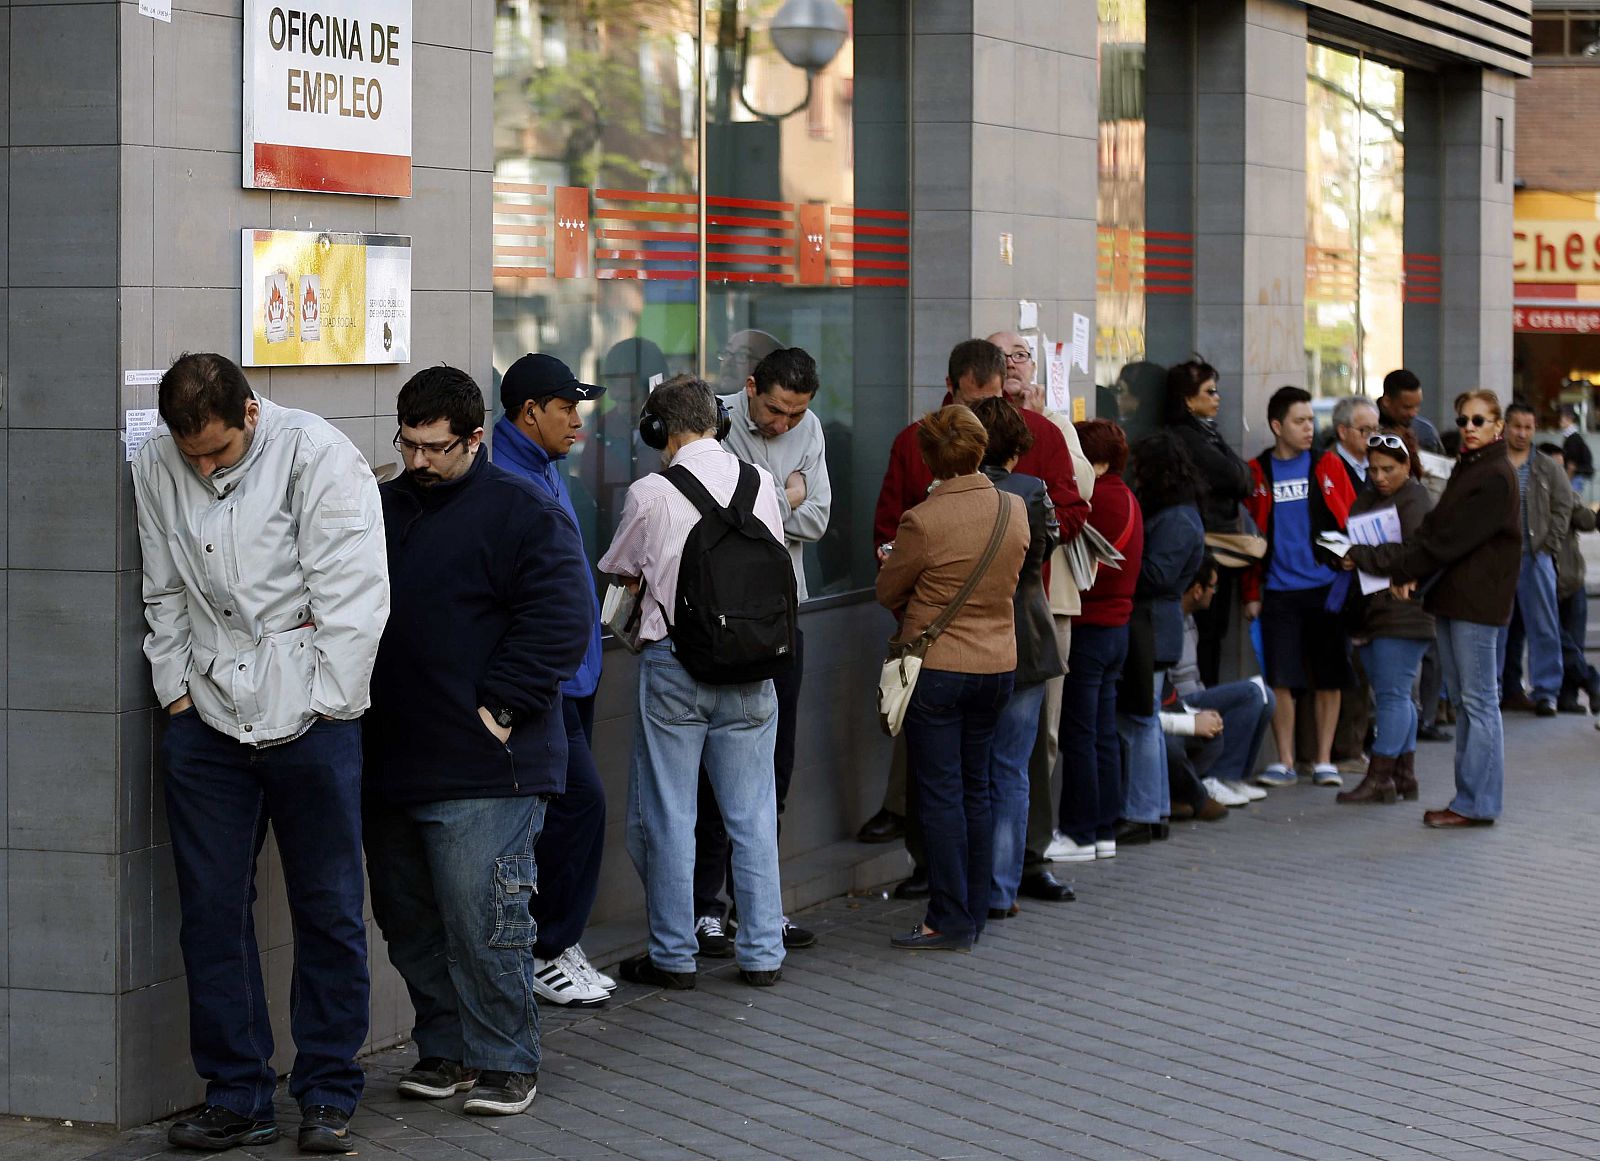 Cola de personas que esperaba  para entrar en una oficina pública de empleo en Madrid